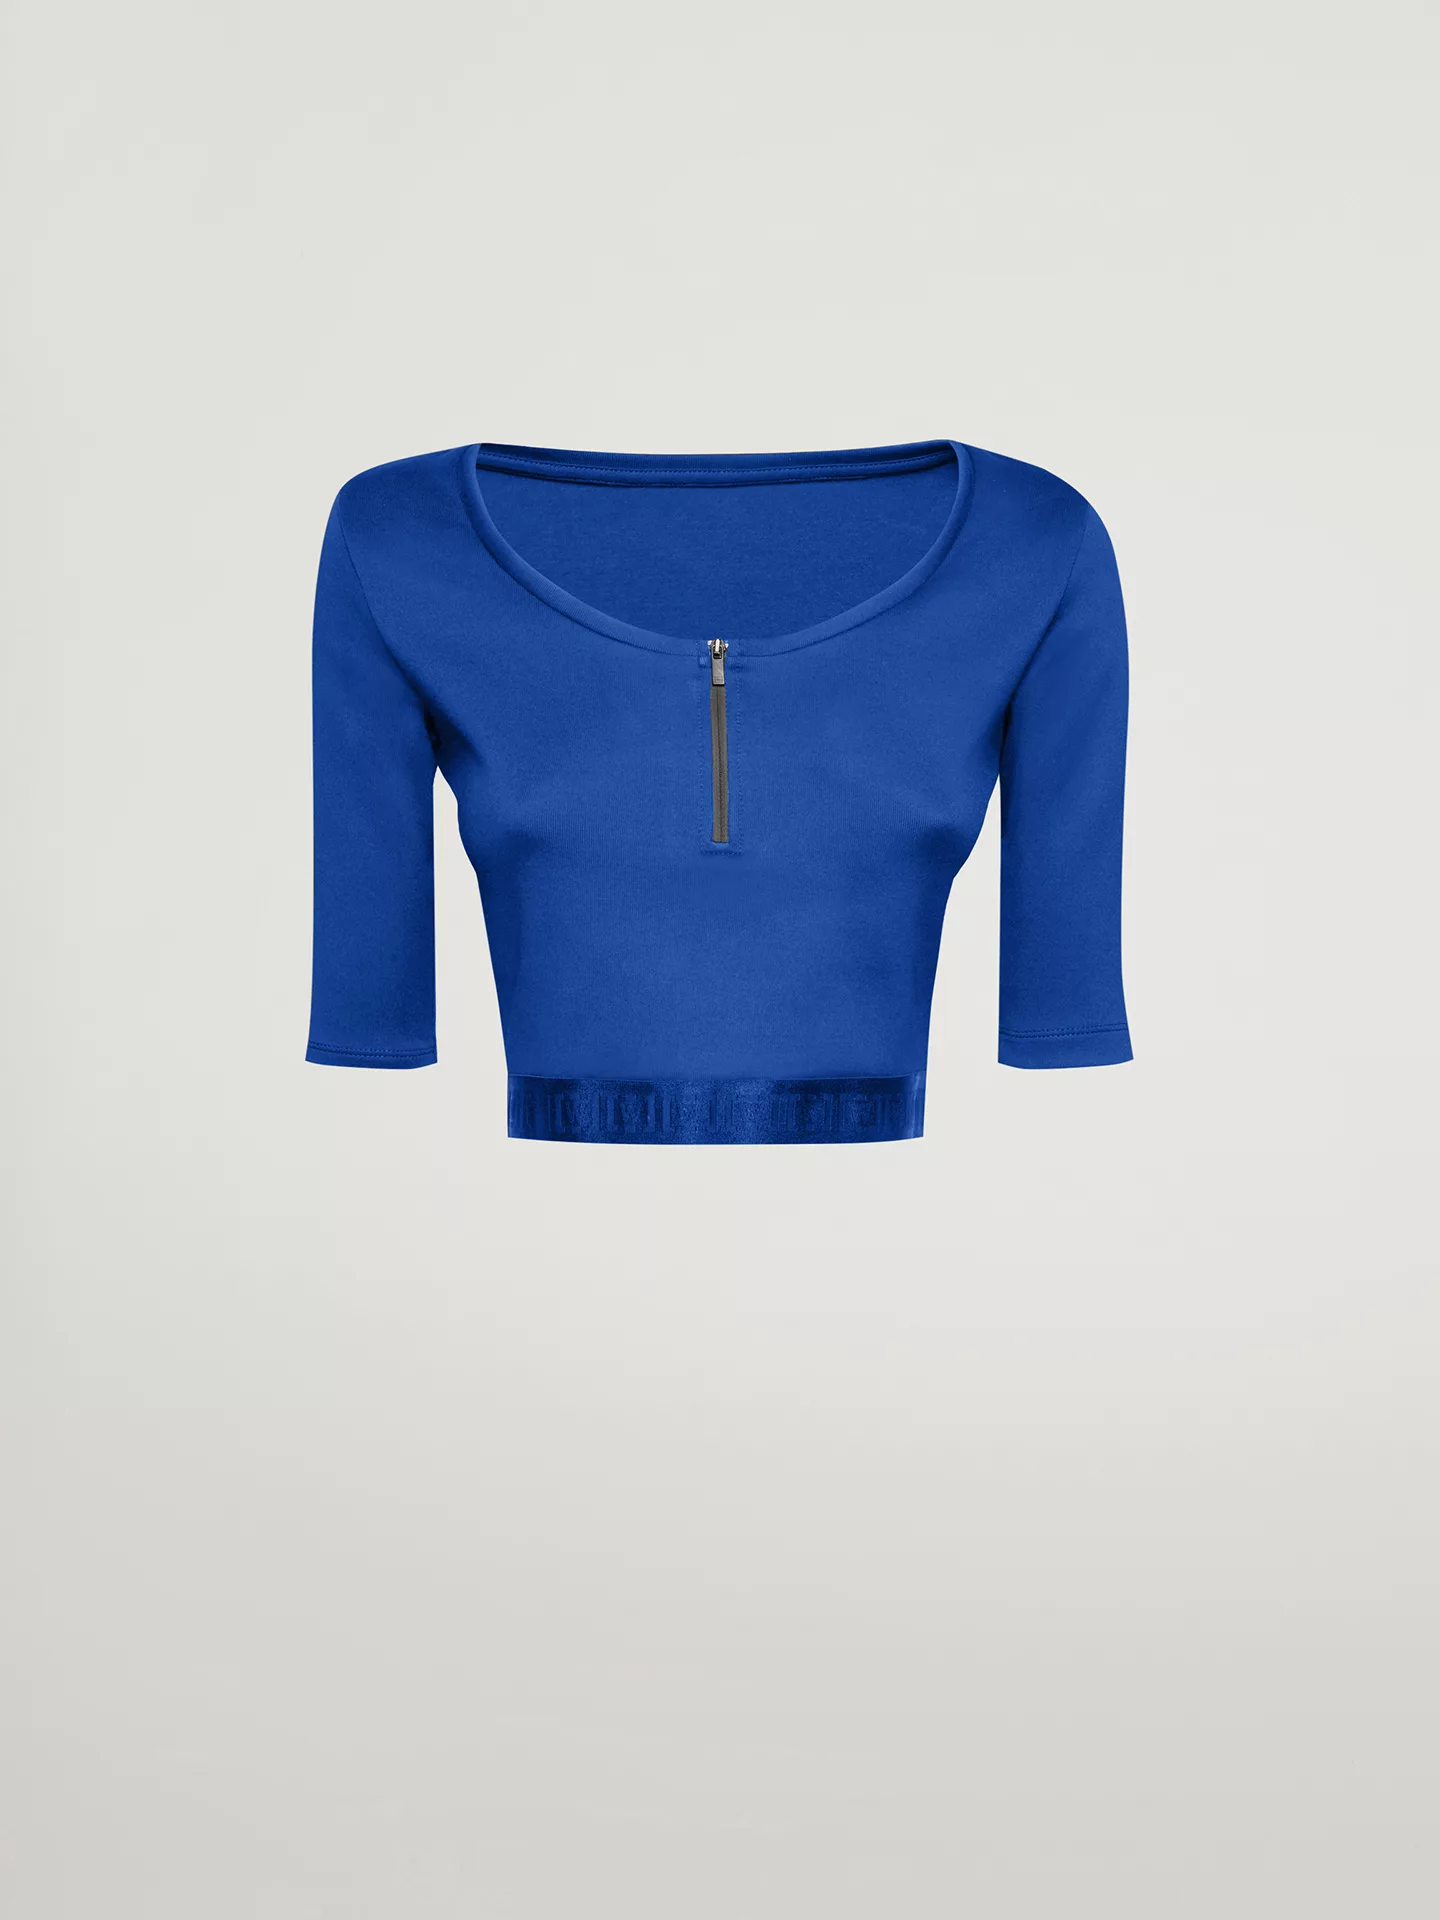 Wolford - Mighty 80s Top Short Sleeves, Frau, dazzling blue, Größe: M günstig online kaufen